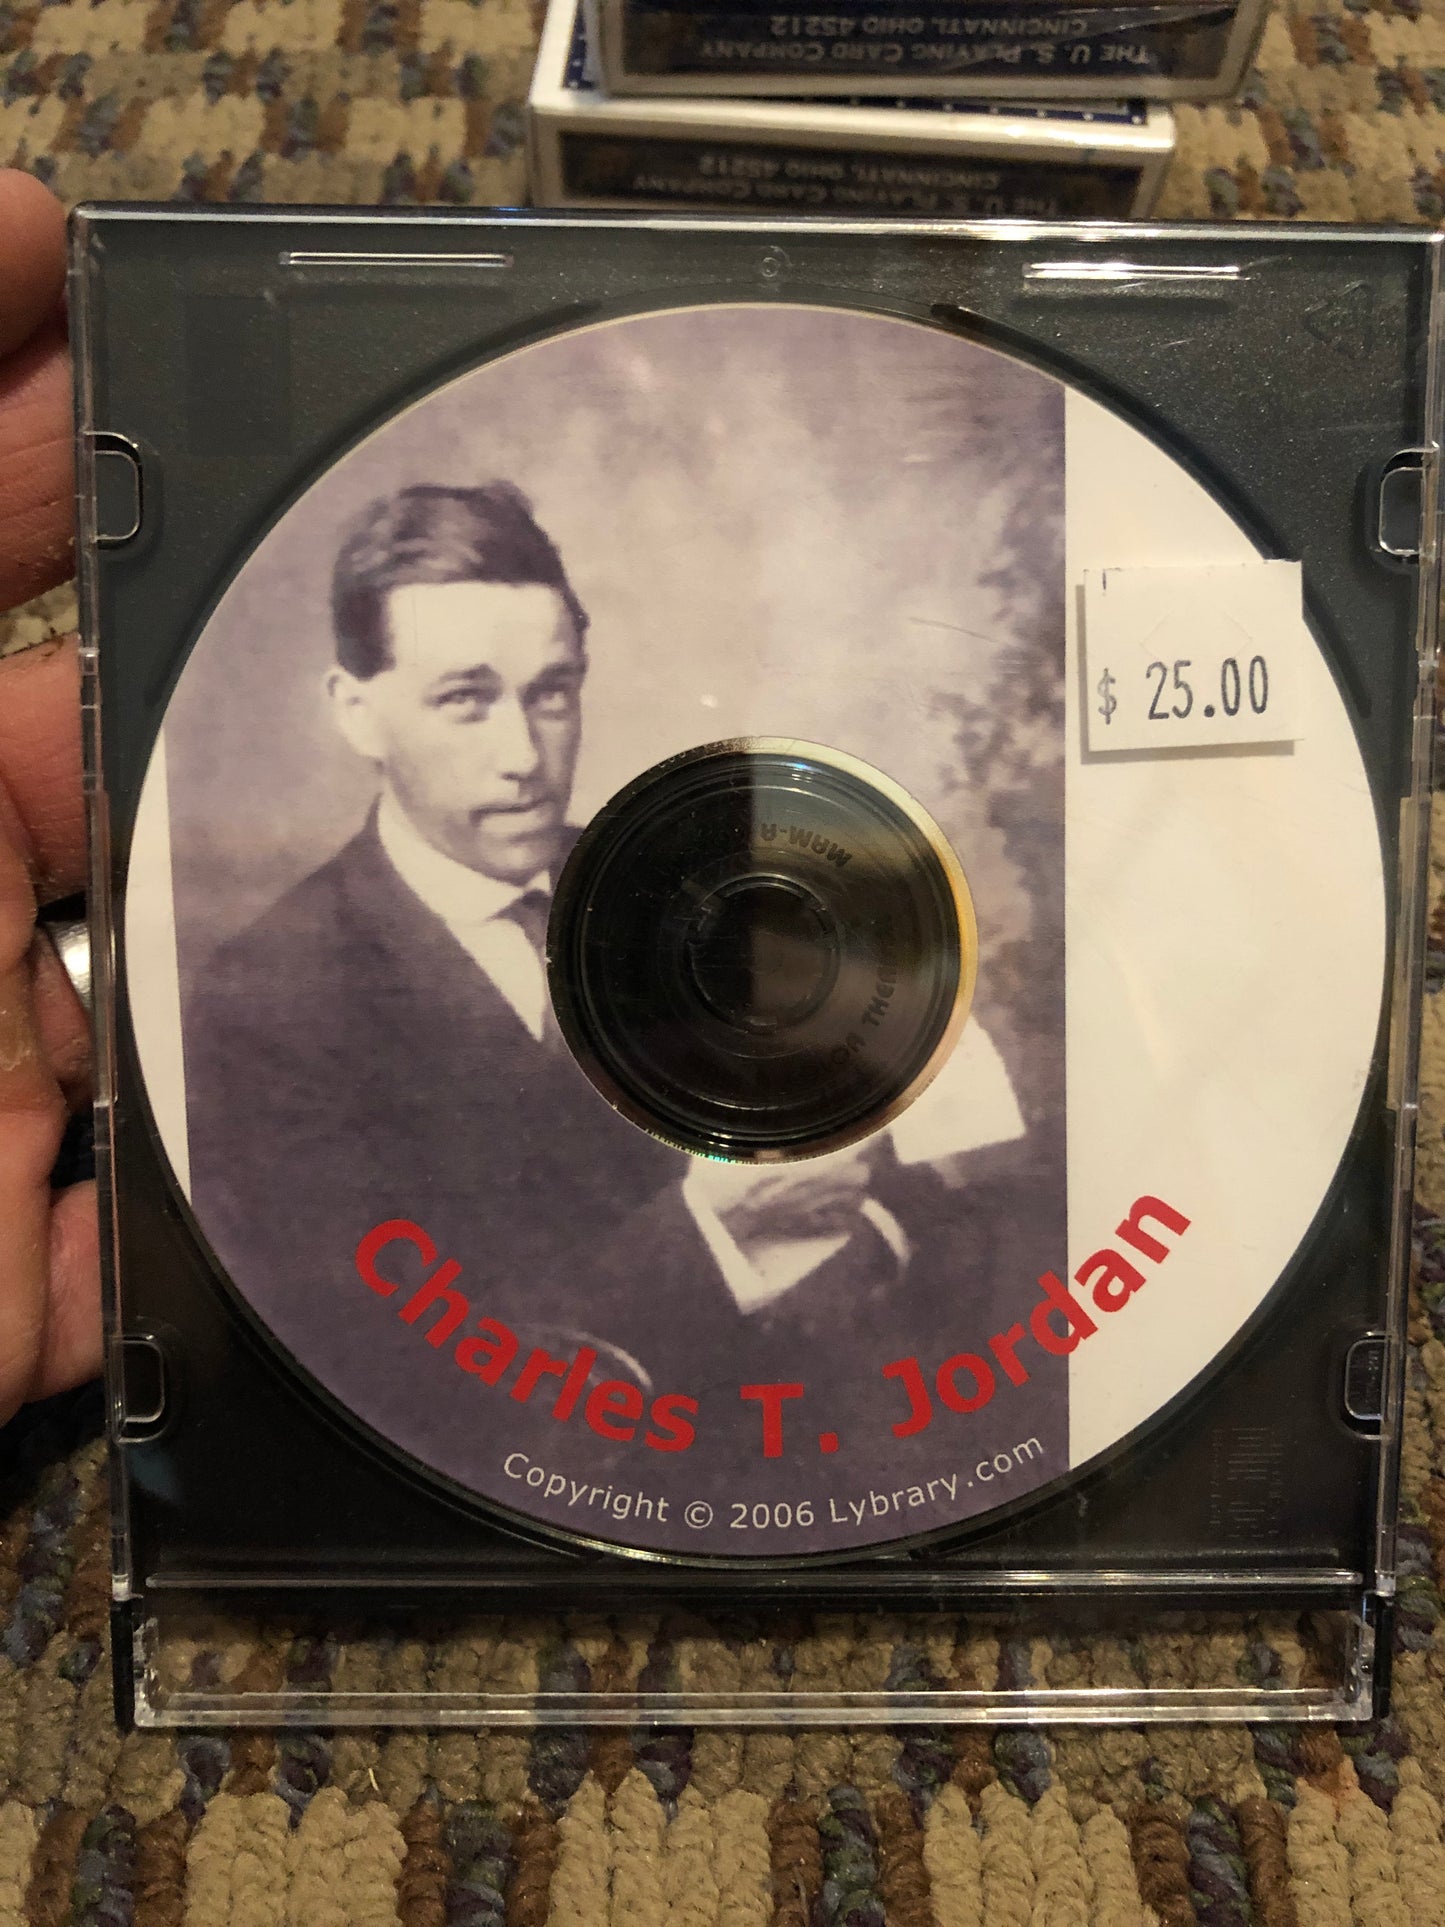 Charles T. Jordan CD-ROM